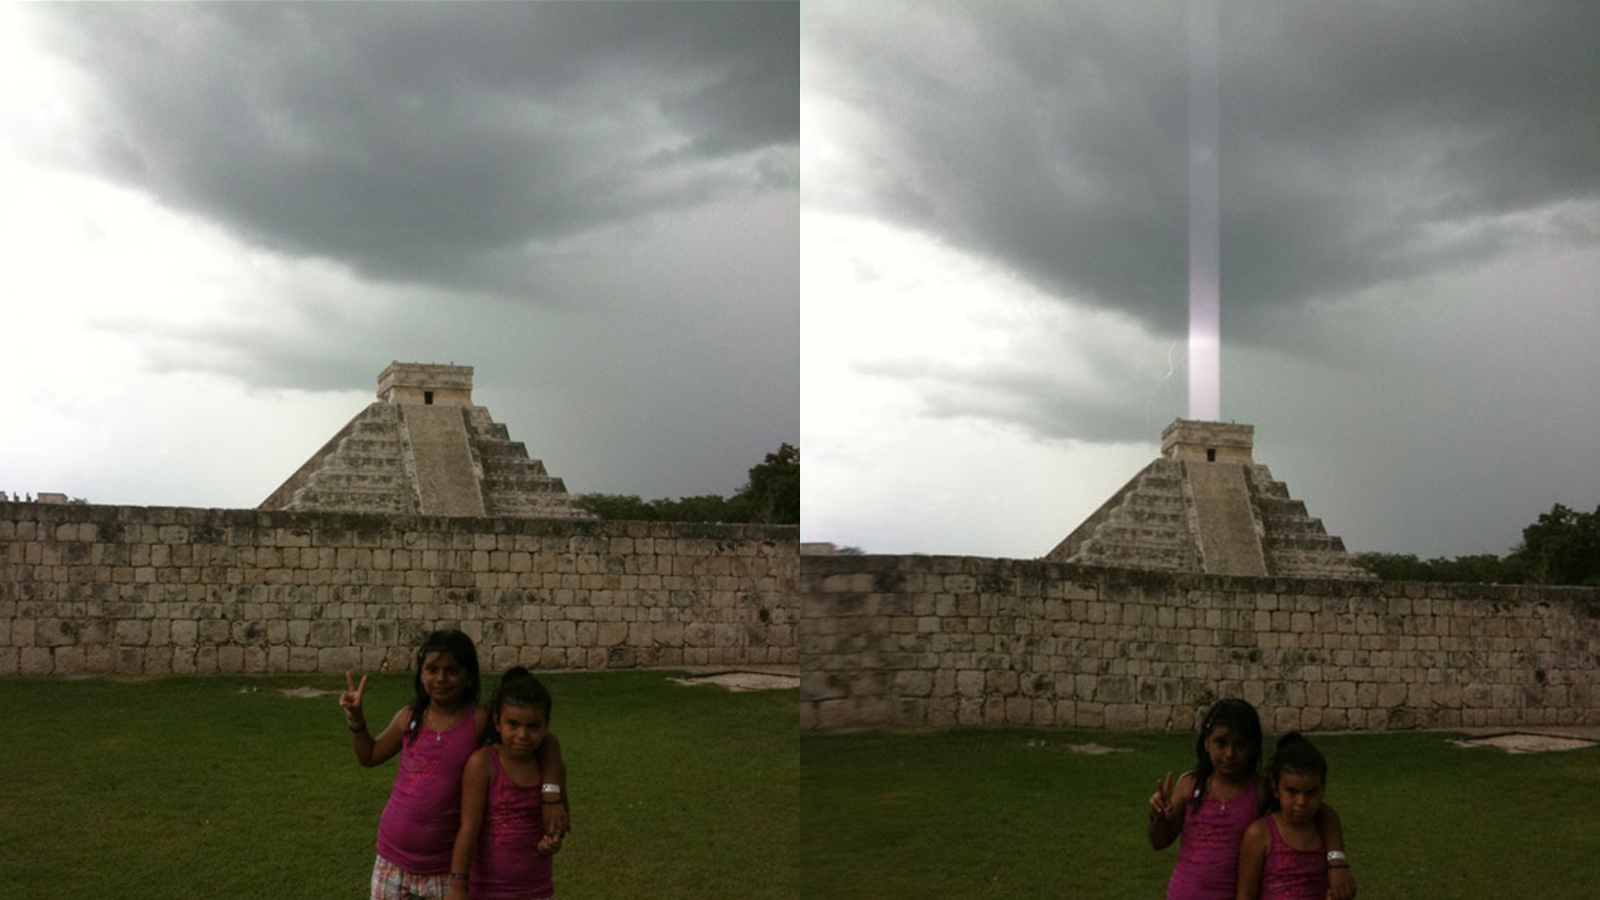 Luz misteriosa aparece sobre pirâmide maia: misticismo ou problema no sensor do iPhone?